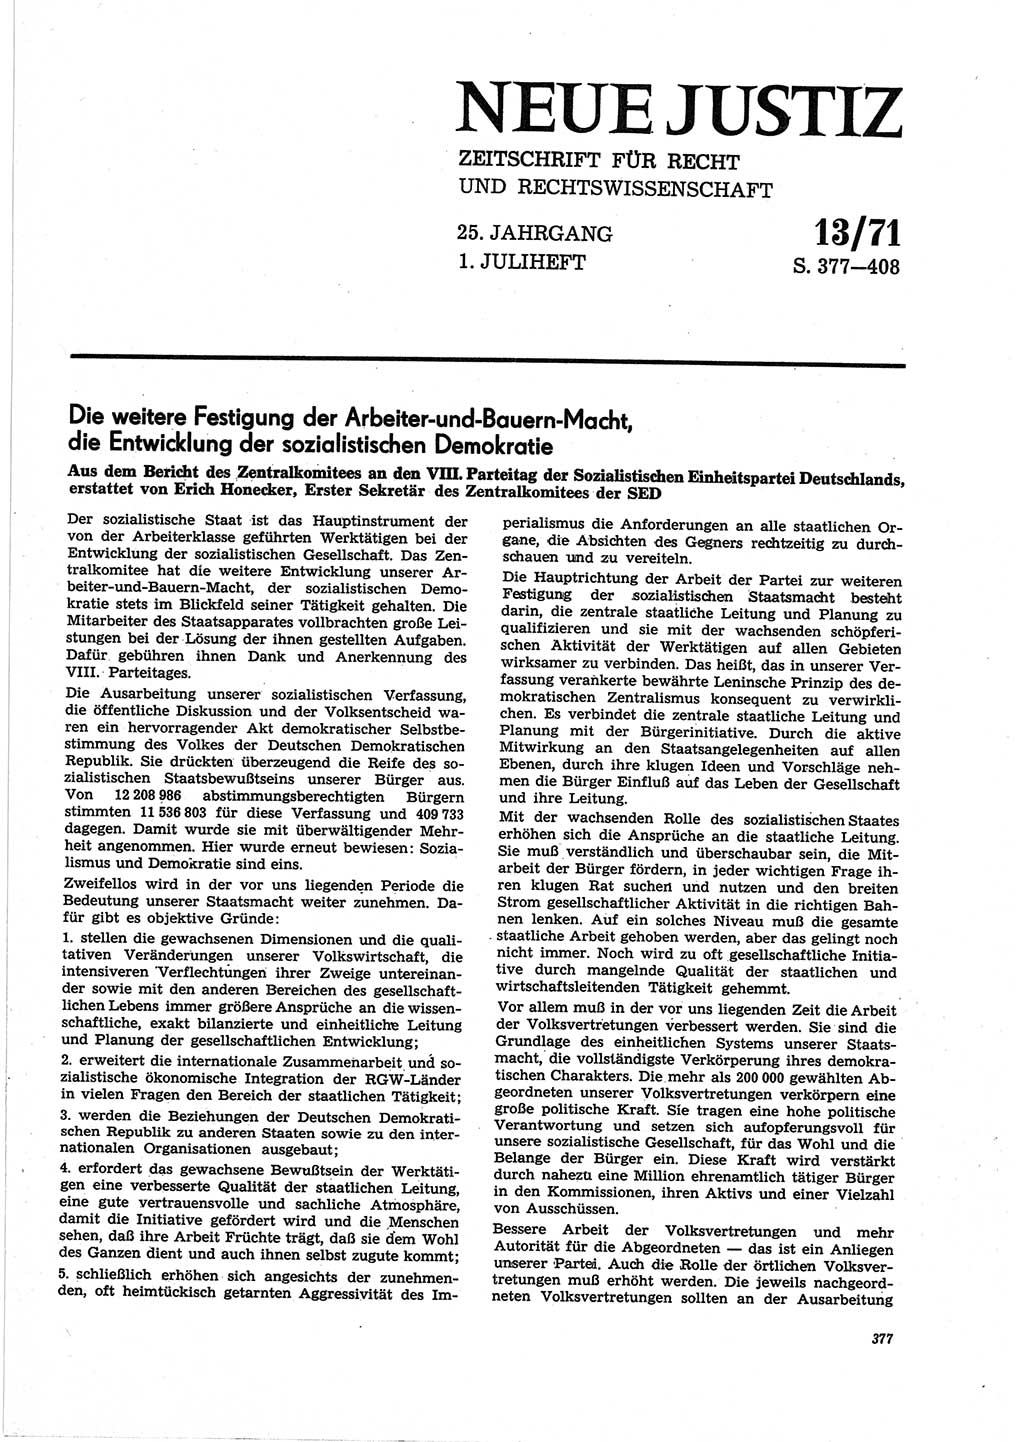 Neue Justiz (NJ), Zeitschrift für Recht und Rechtswissenschaft [Deutsche Demokratische Republik (DDR)], 25. Jahrgang 1971, Seite 377 (NJ DDR 1971, S. 377)